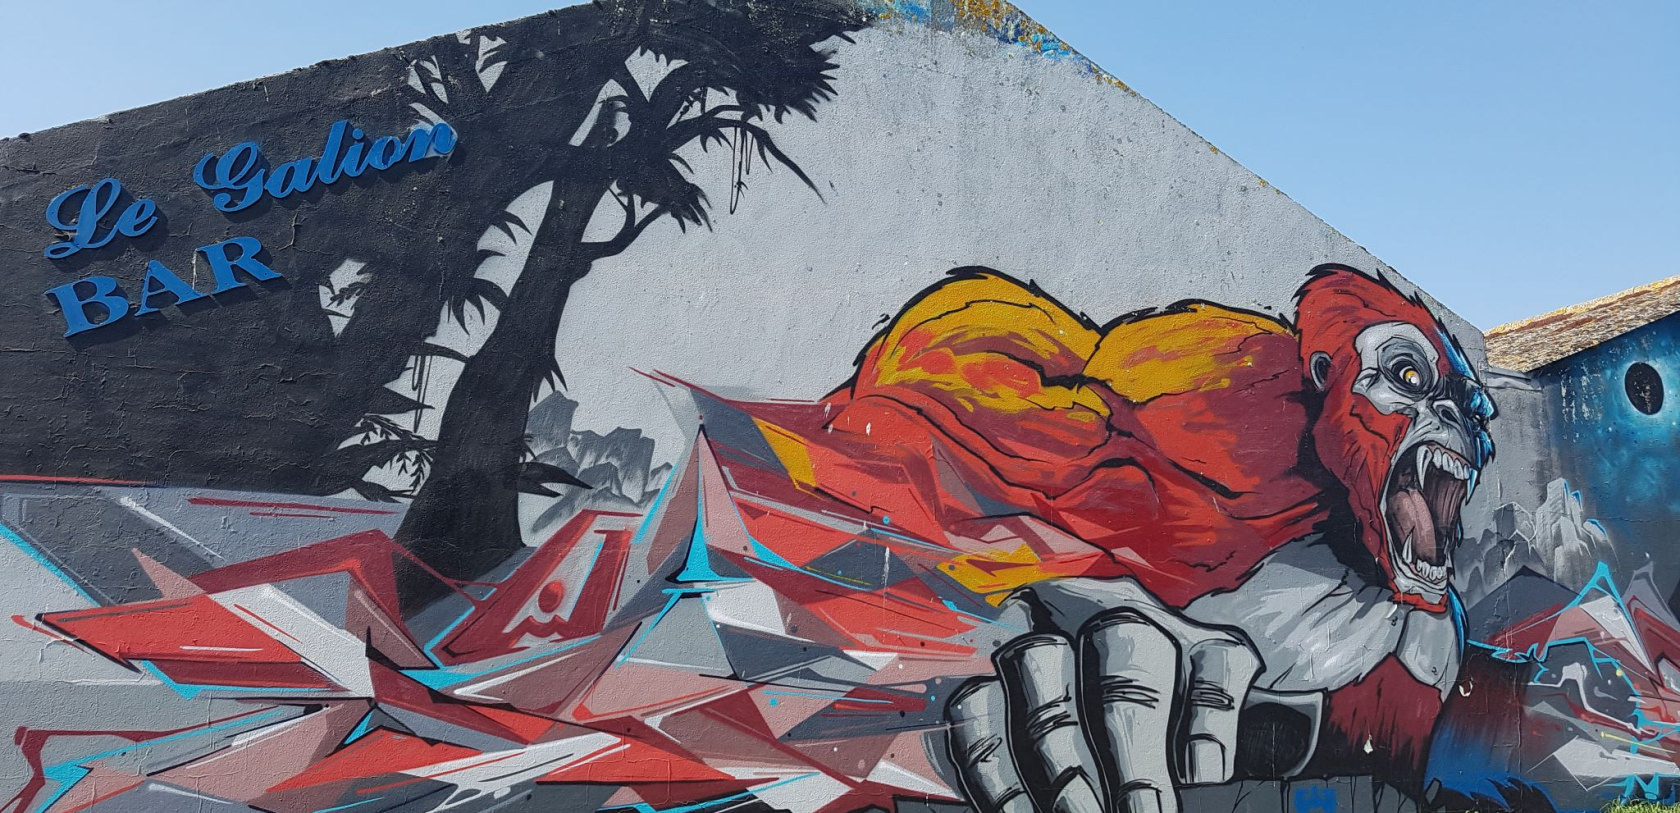 Fresque street art Gorille hurlant, graffiti de Lez et Samp à La Perrière, quartier du port de pêche de Lorient (Morbihan)